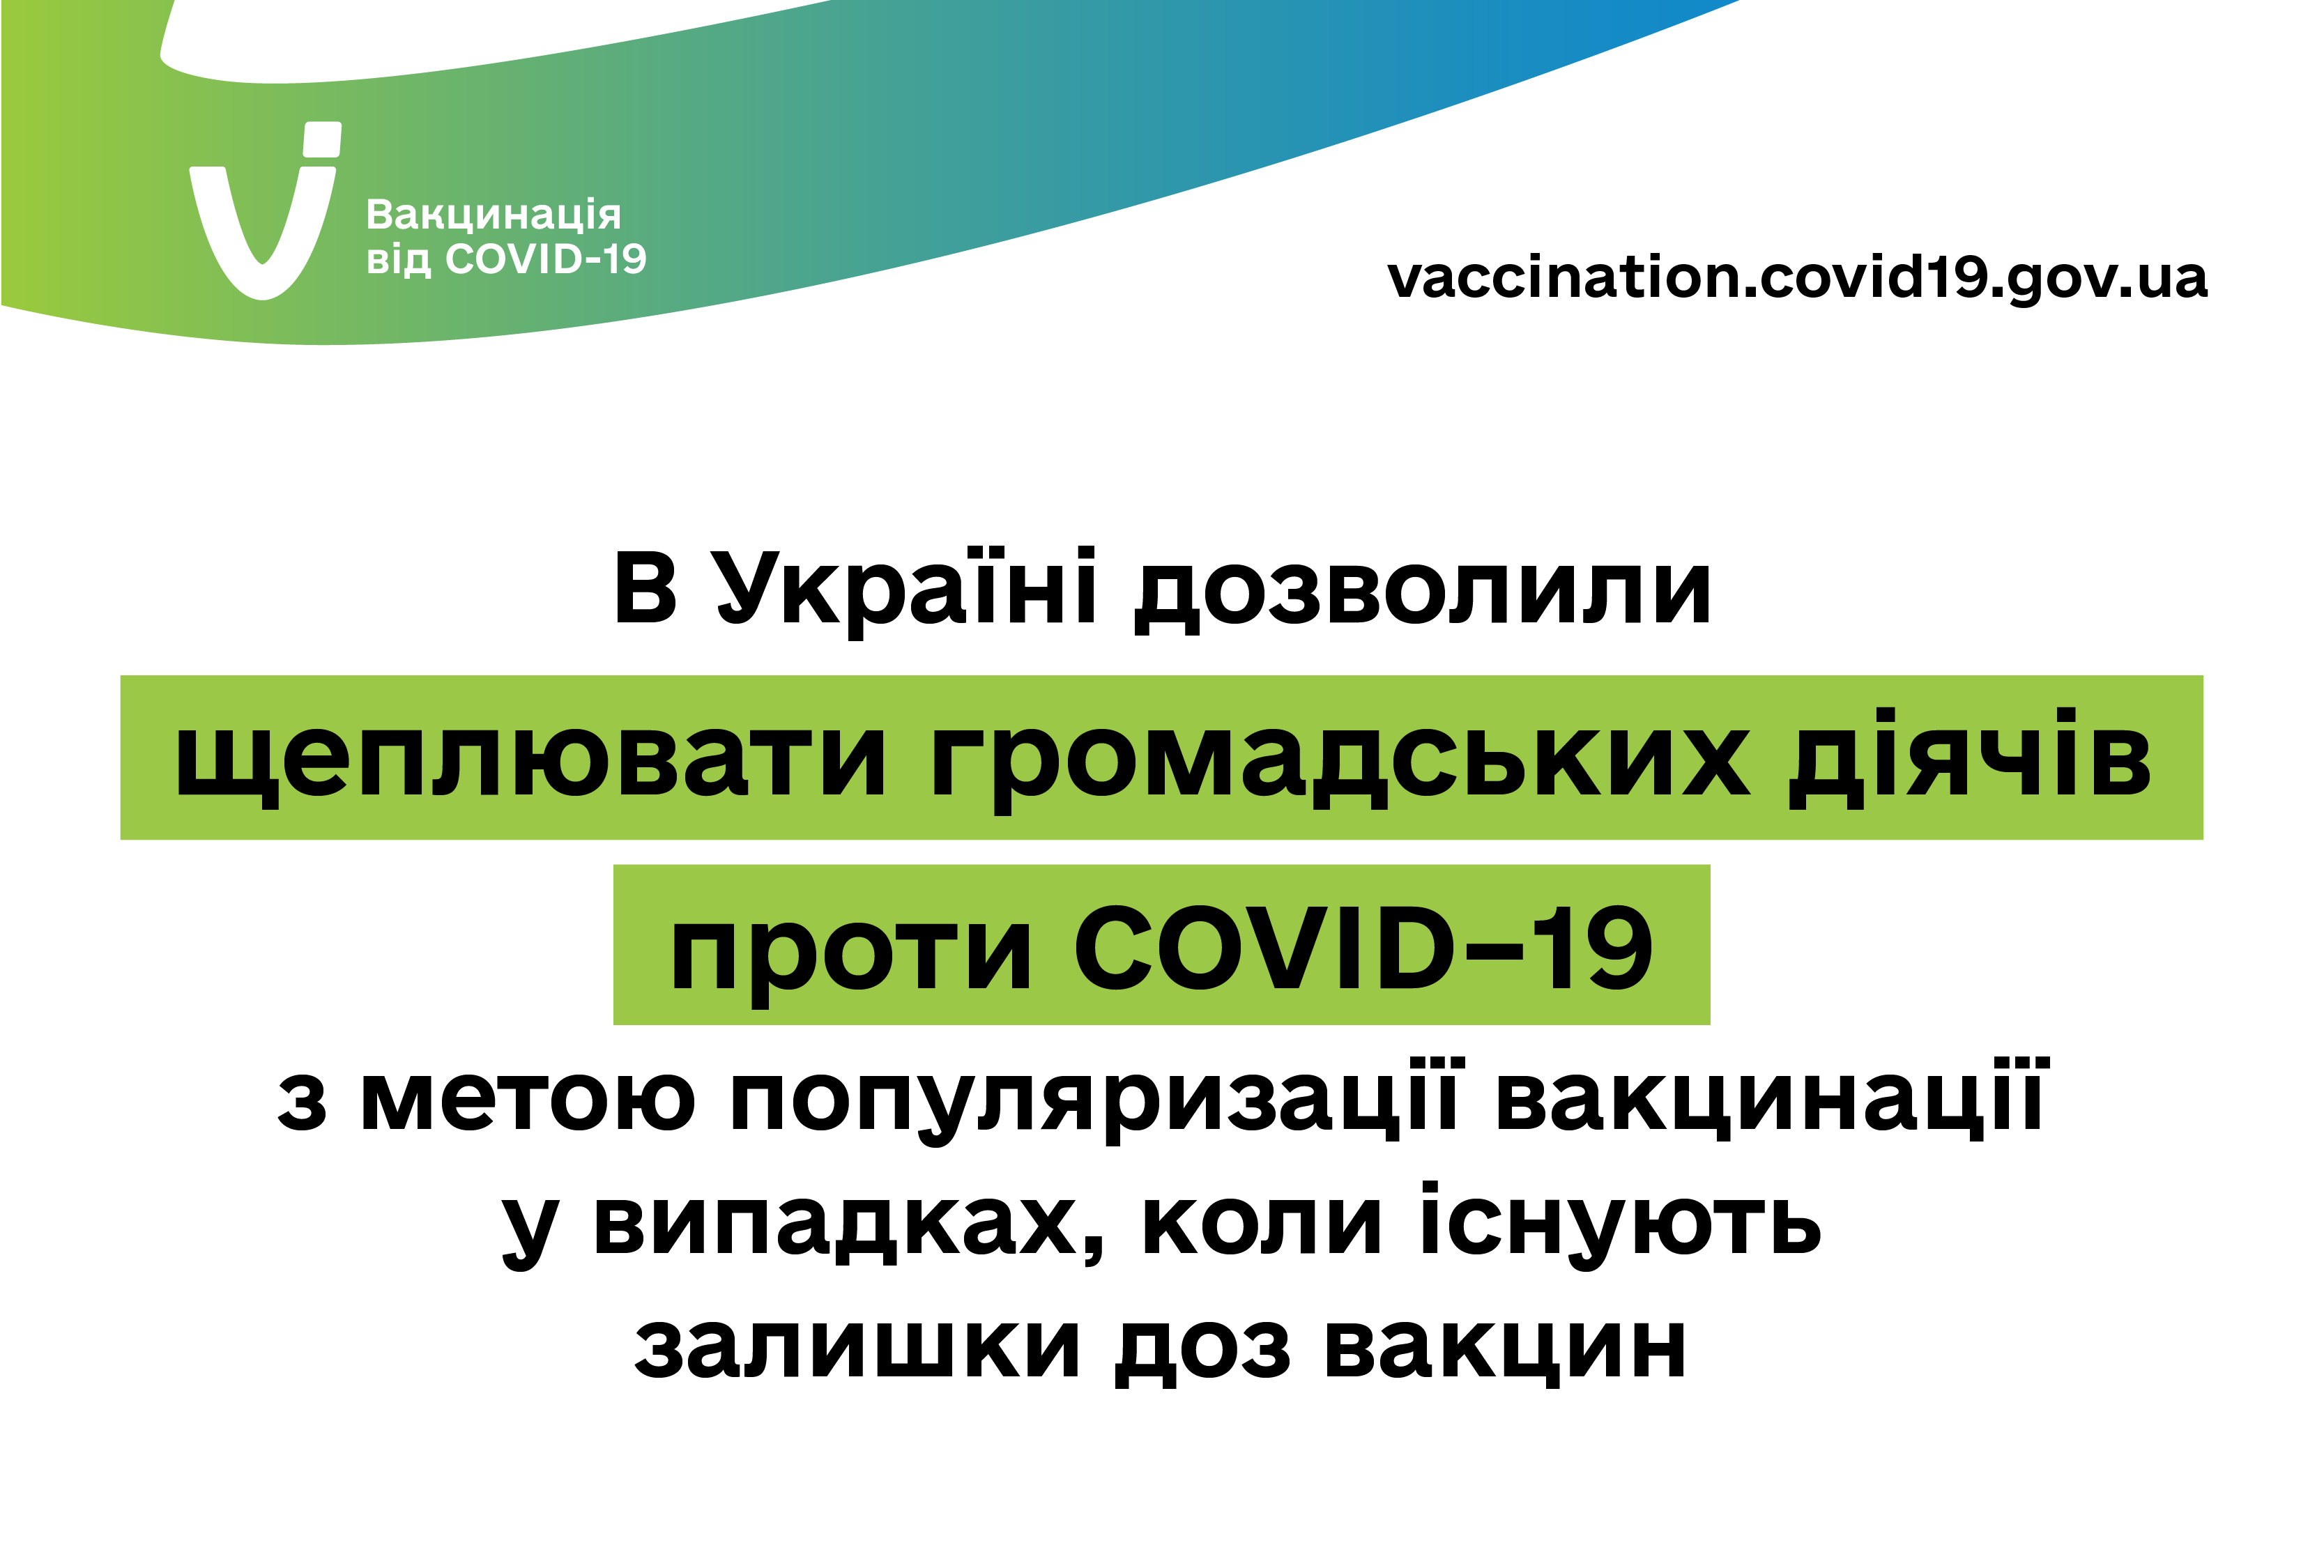 В Украине разрешили прививать против COVID-19 общественных деятелей, когда есть остатки доз вакцин